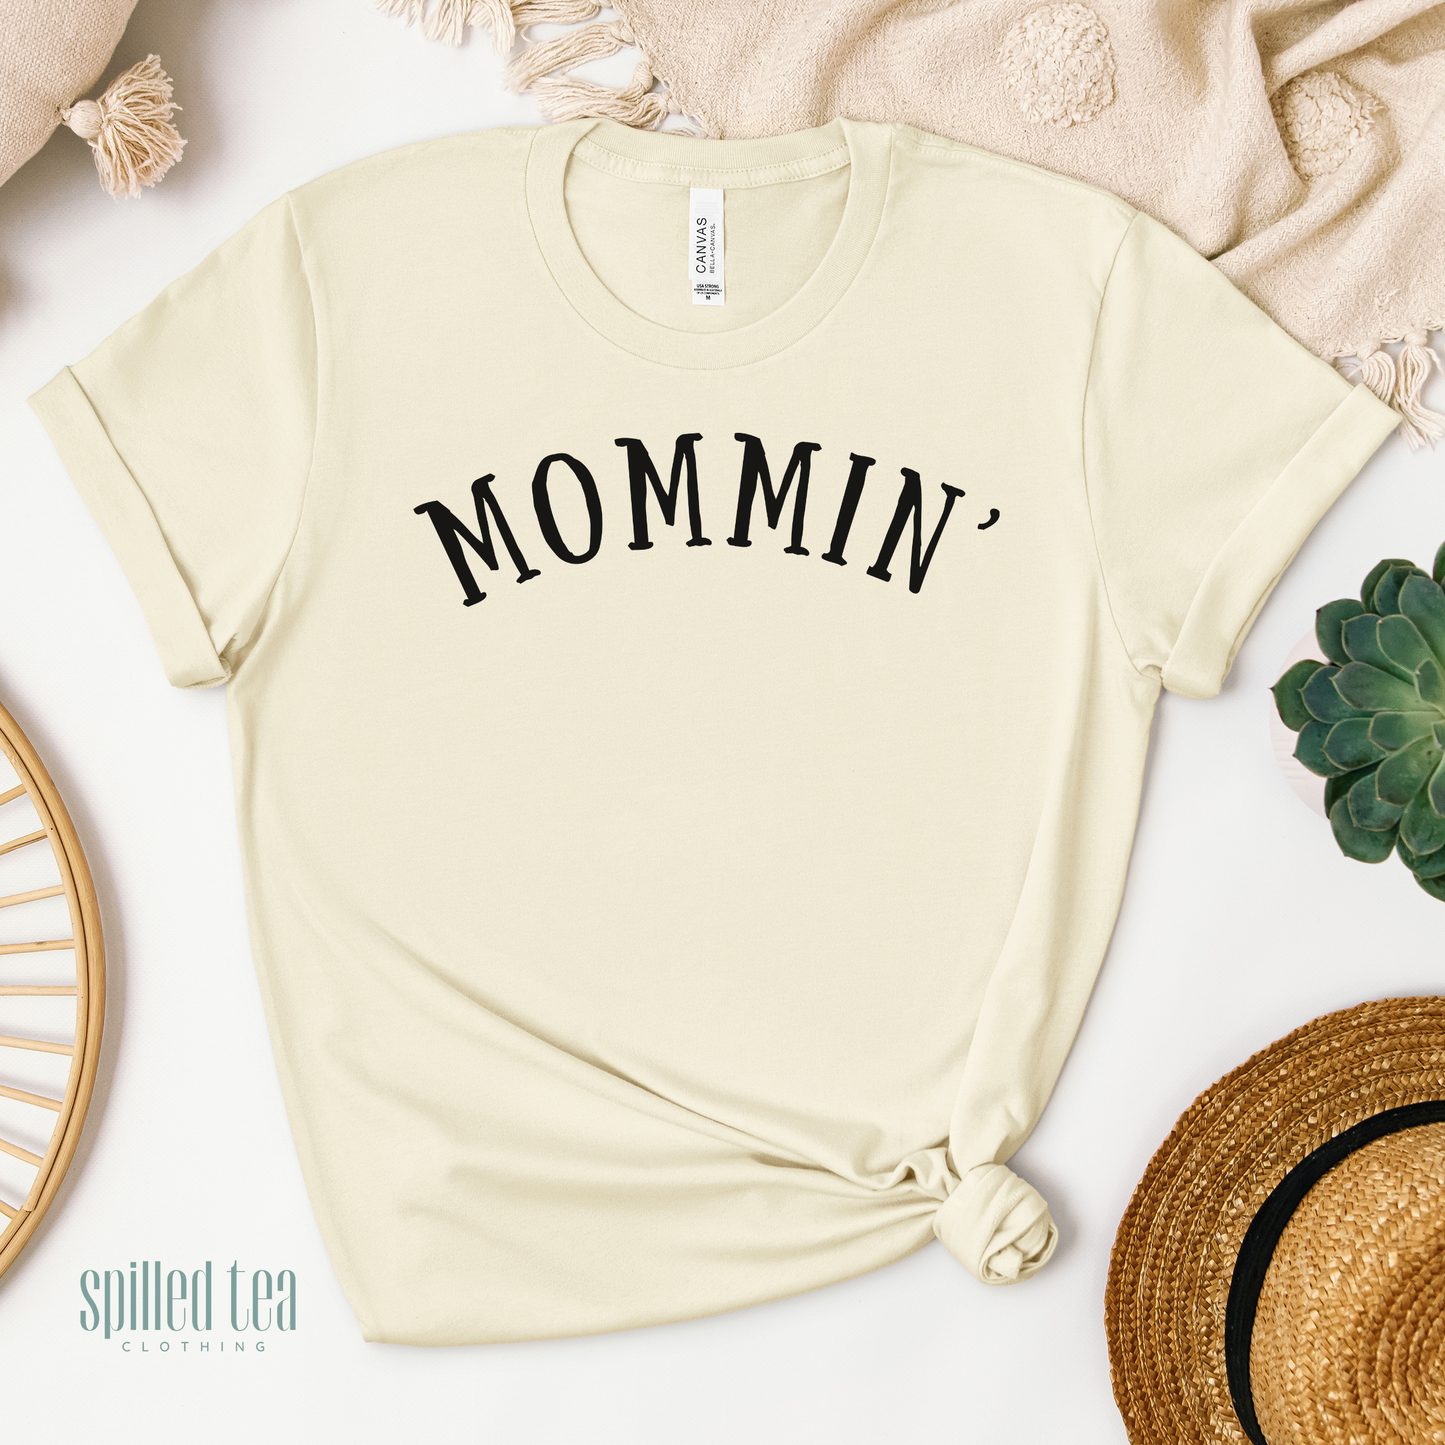 Mommin' T-Shirt